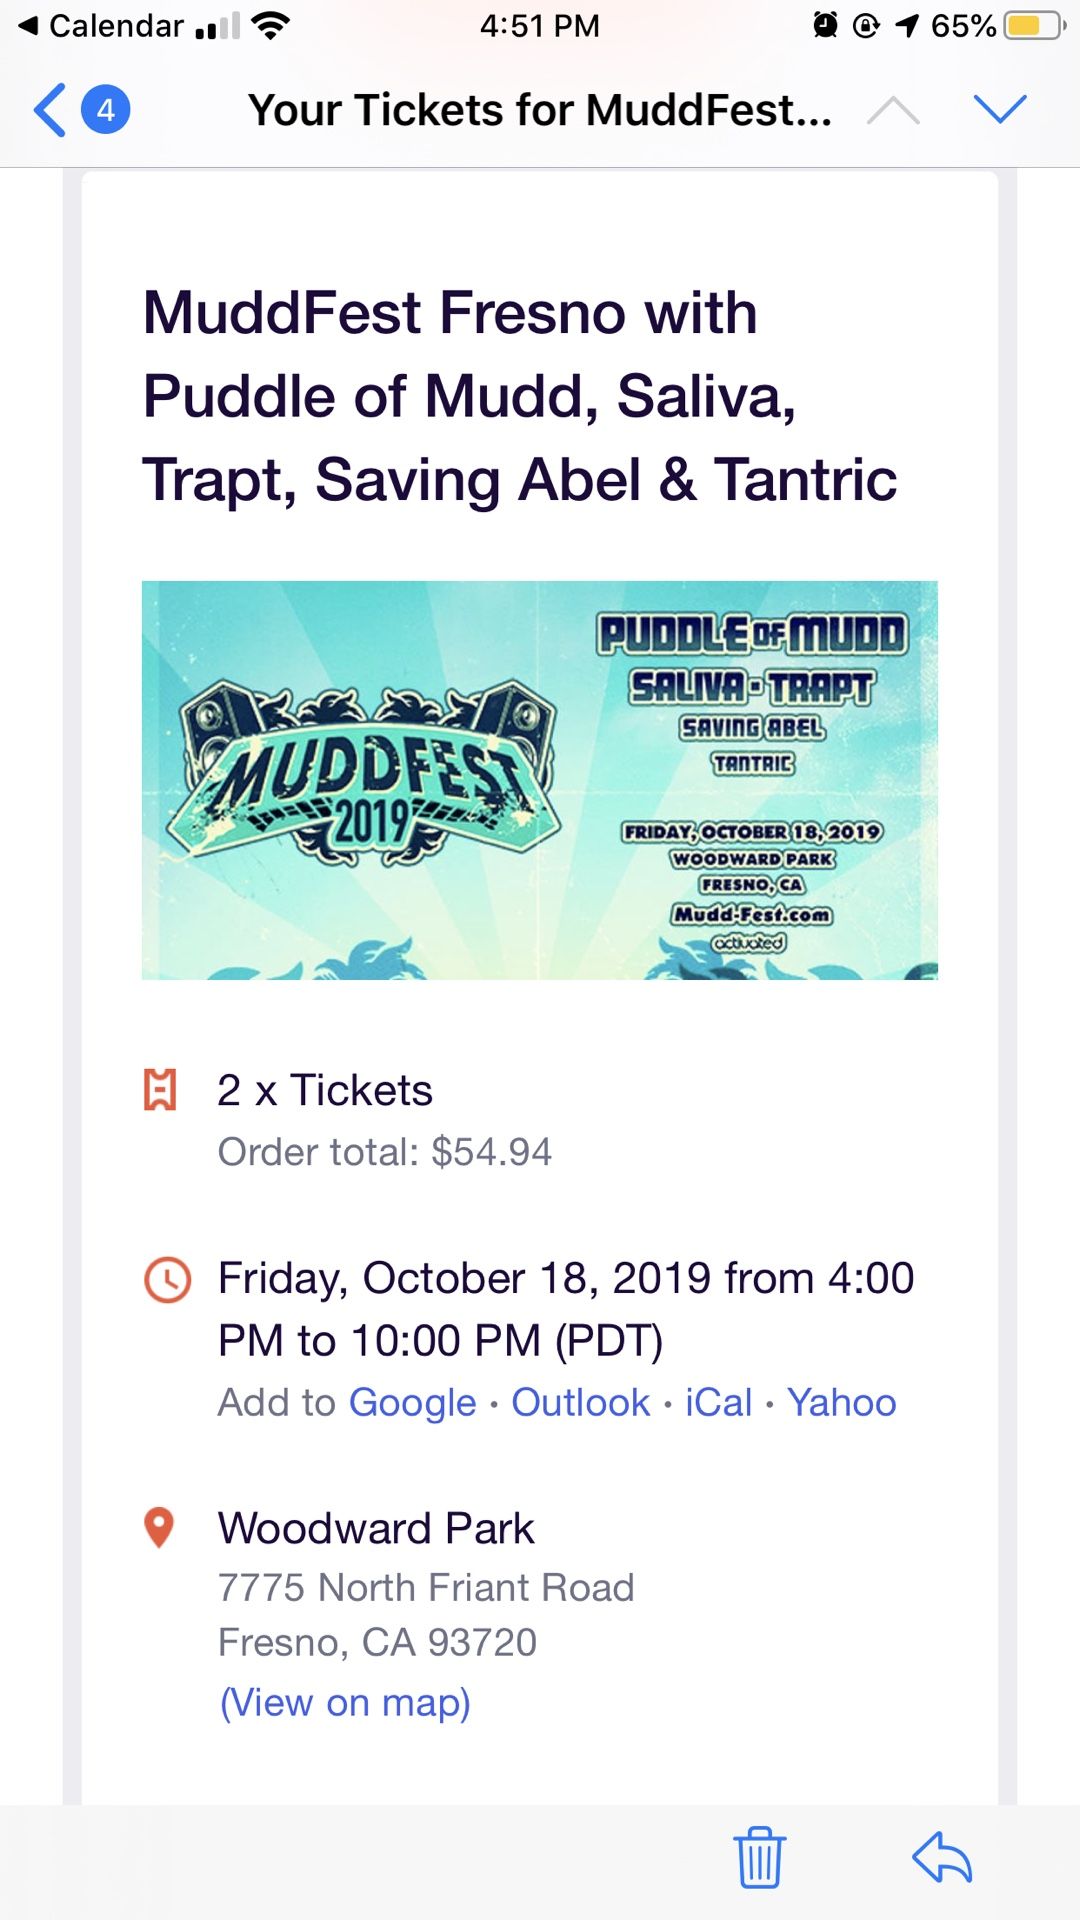 MuddFest 2019 tickets